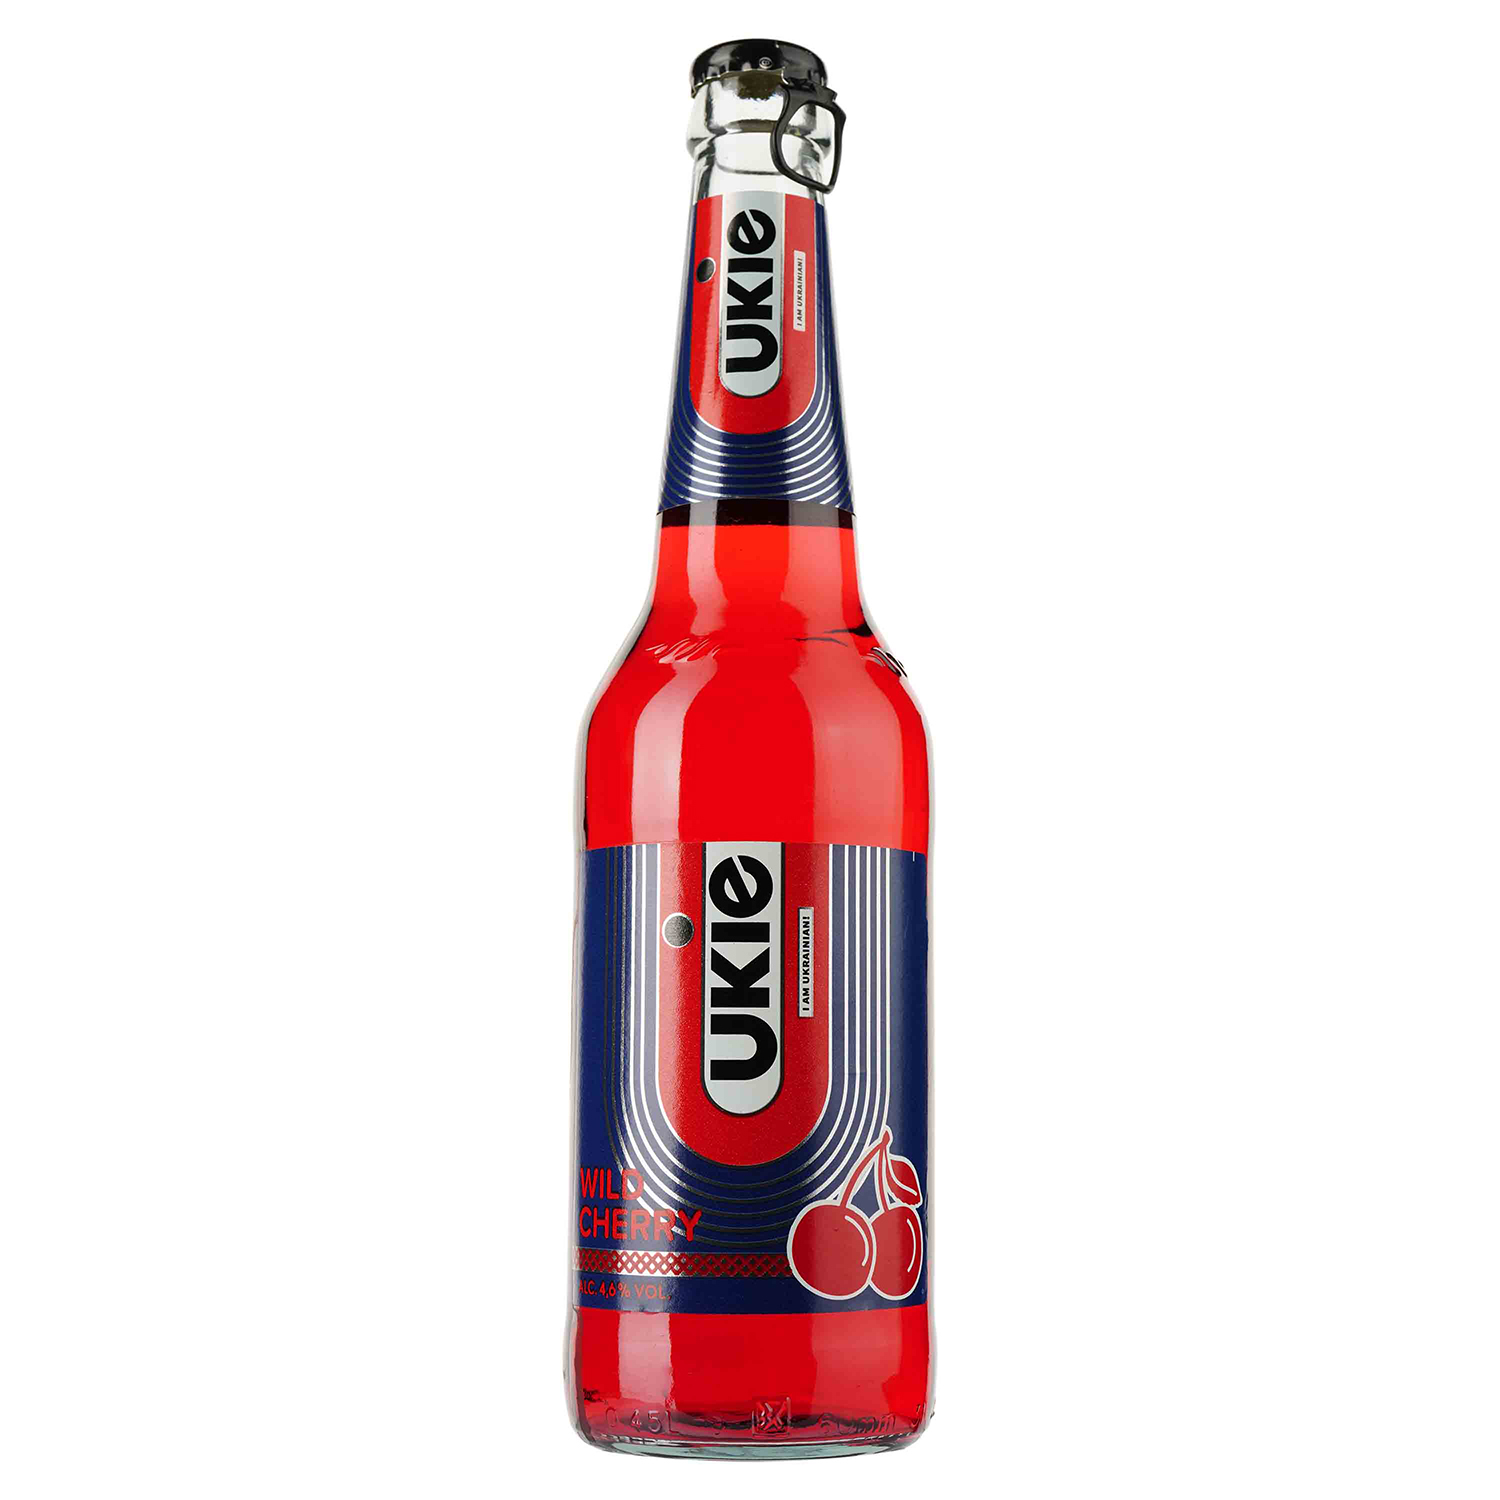 Пиво Ukie Wild Cherry, світле, 4,6%, 0,45 л (909154) - фото 1